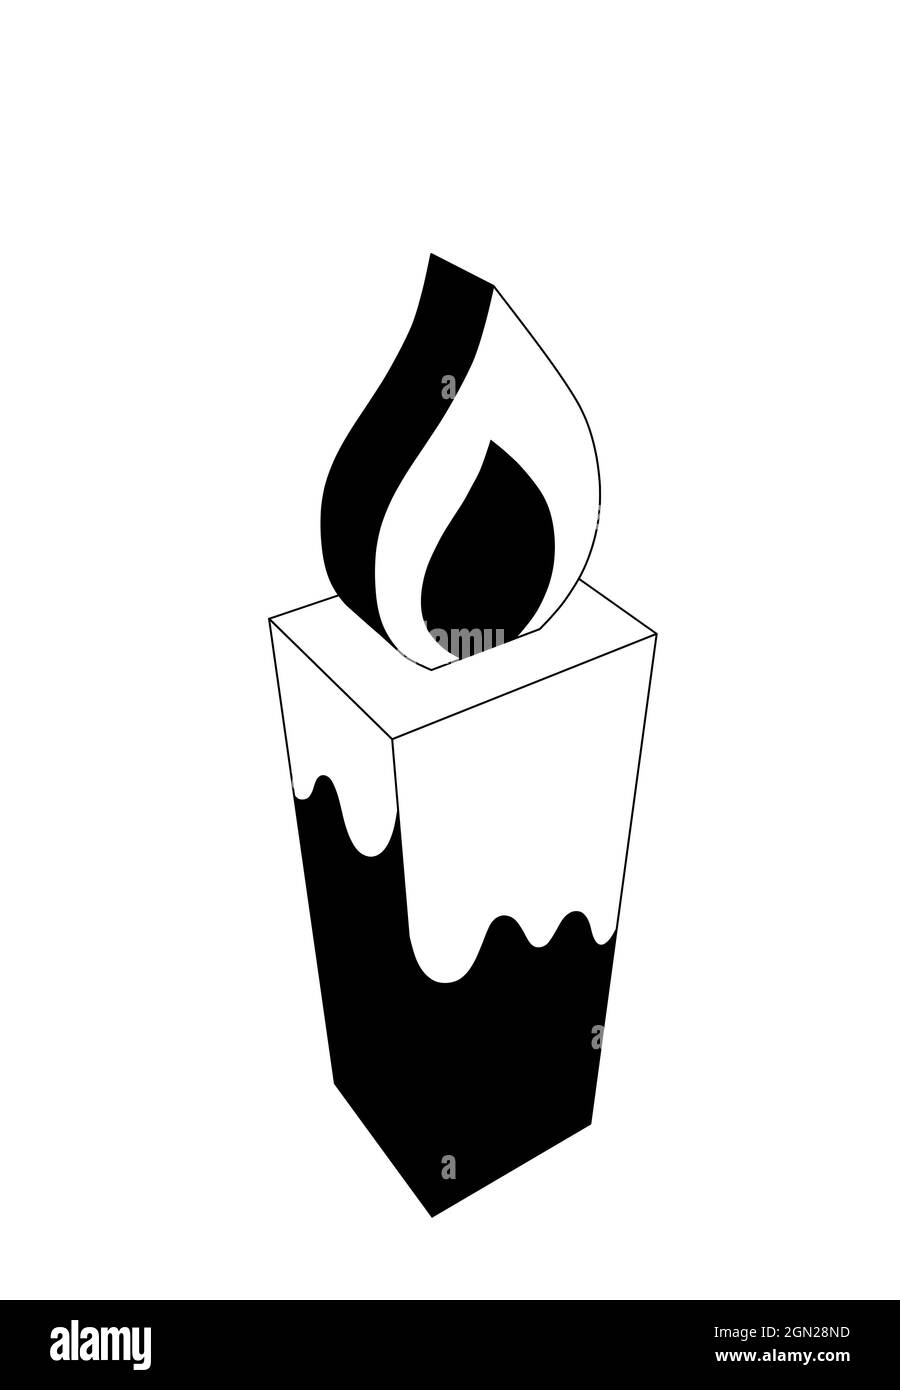 illustrazione di una candela bianca e nera, 3d isolato su sfondo bianco Foto Stock